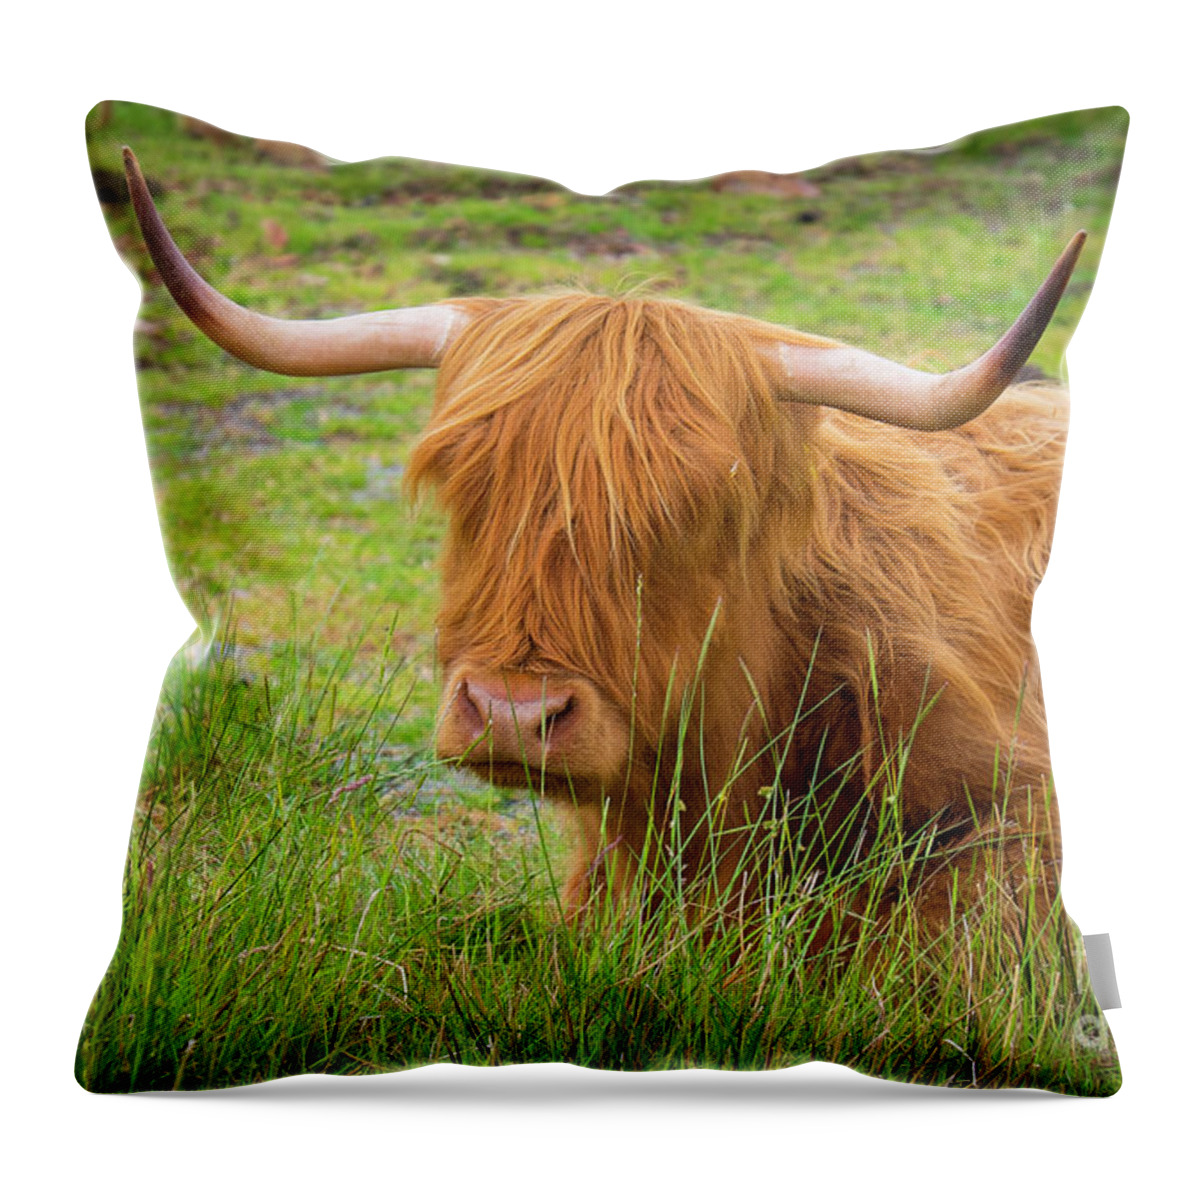 Scotland Throw Pillow featuring the photograph Scotland by Milena Boeva